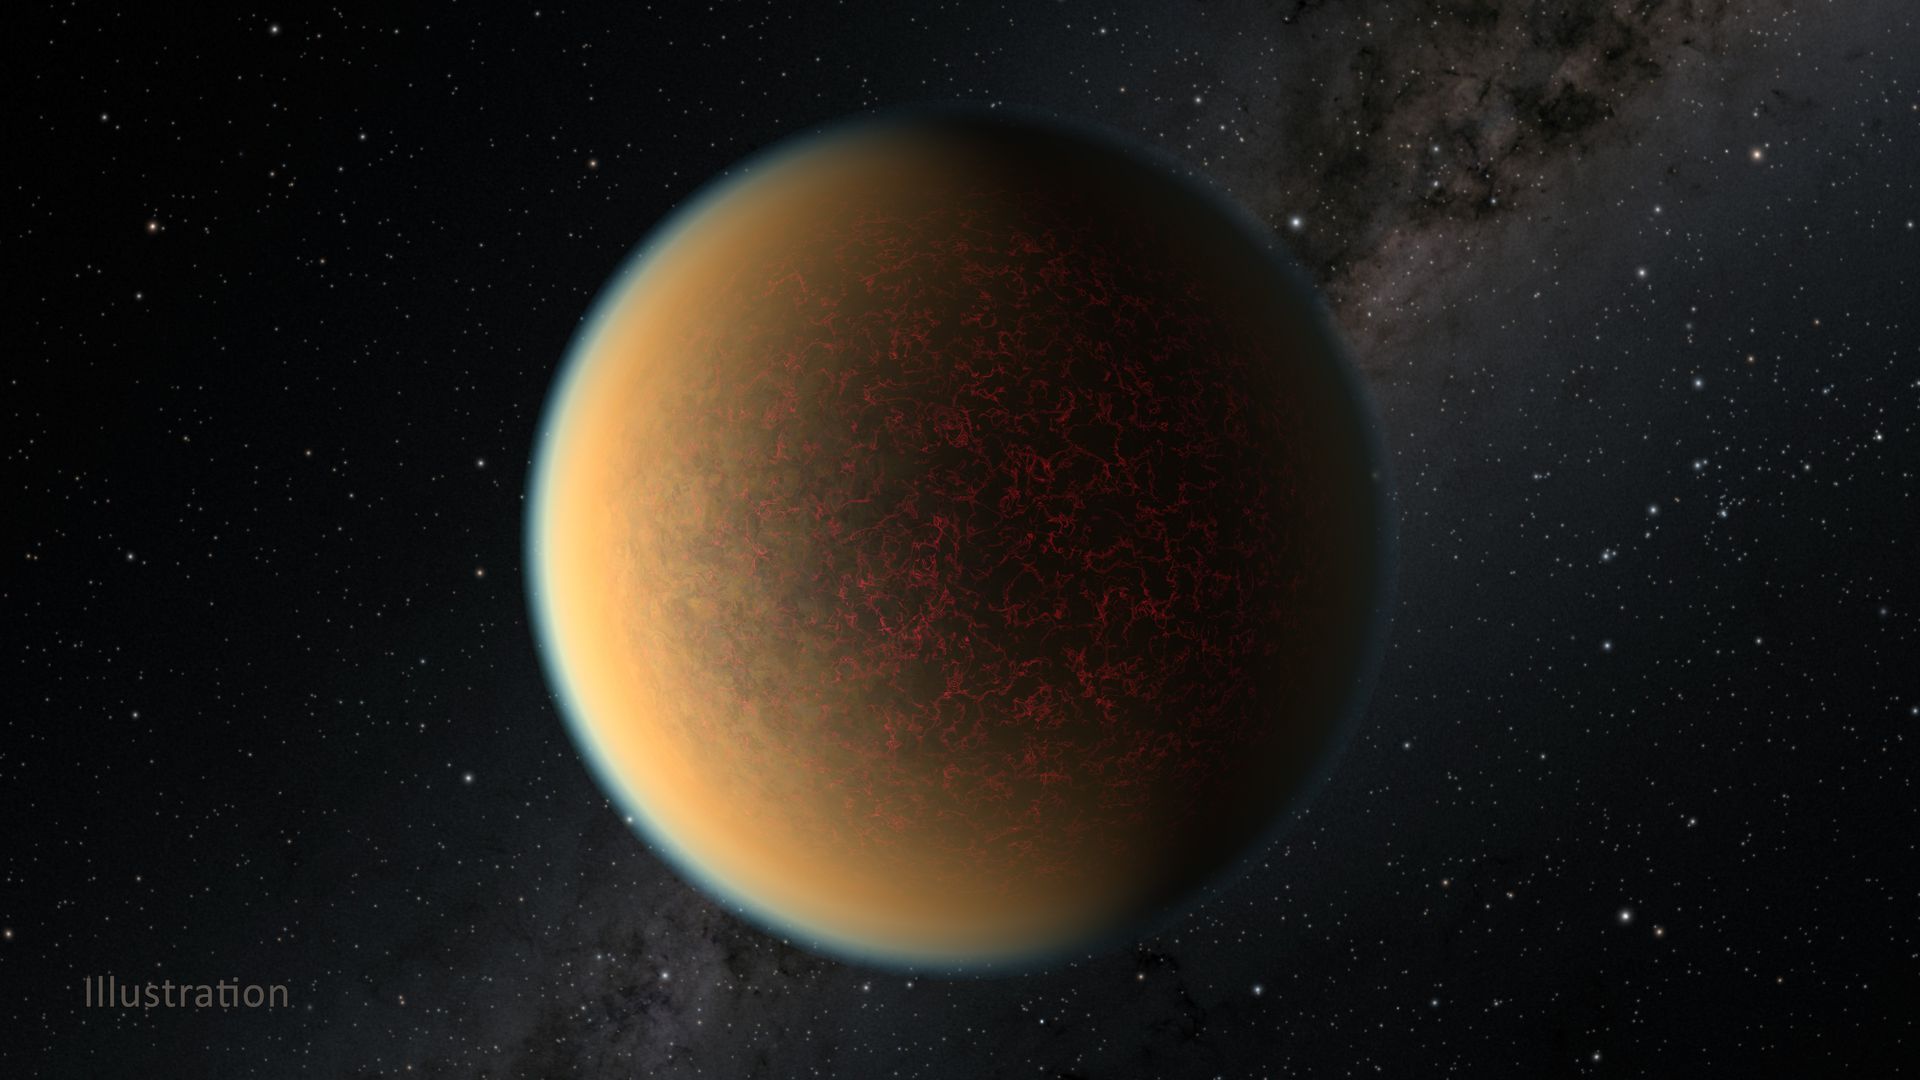 Artist's illustration of planet GJ 1132 b.